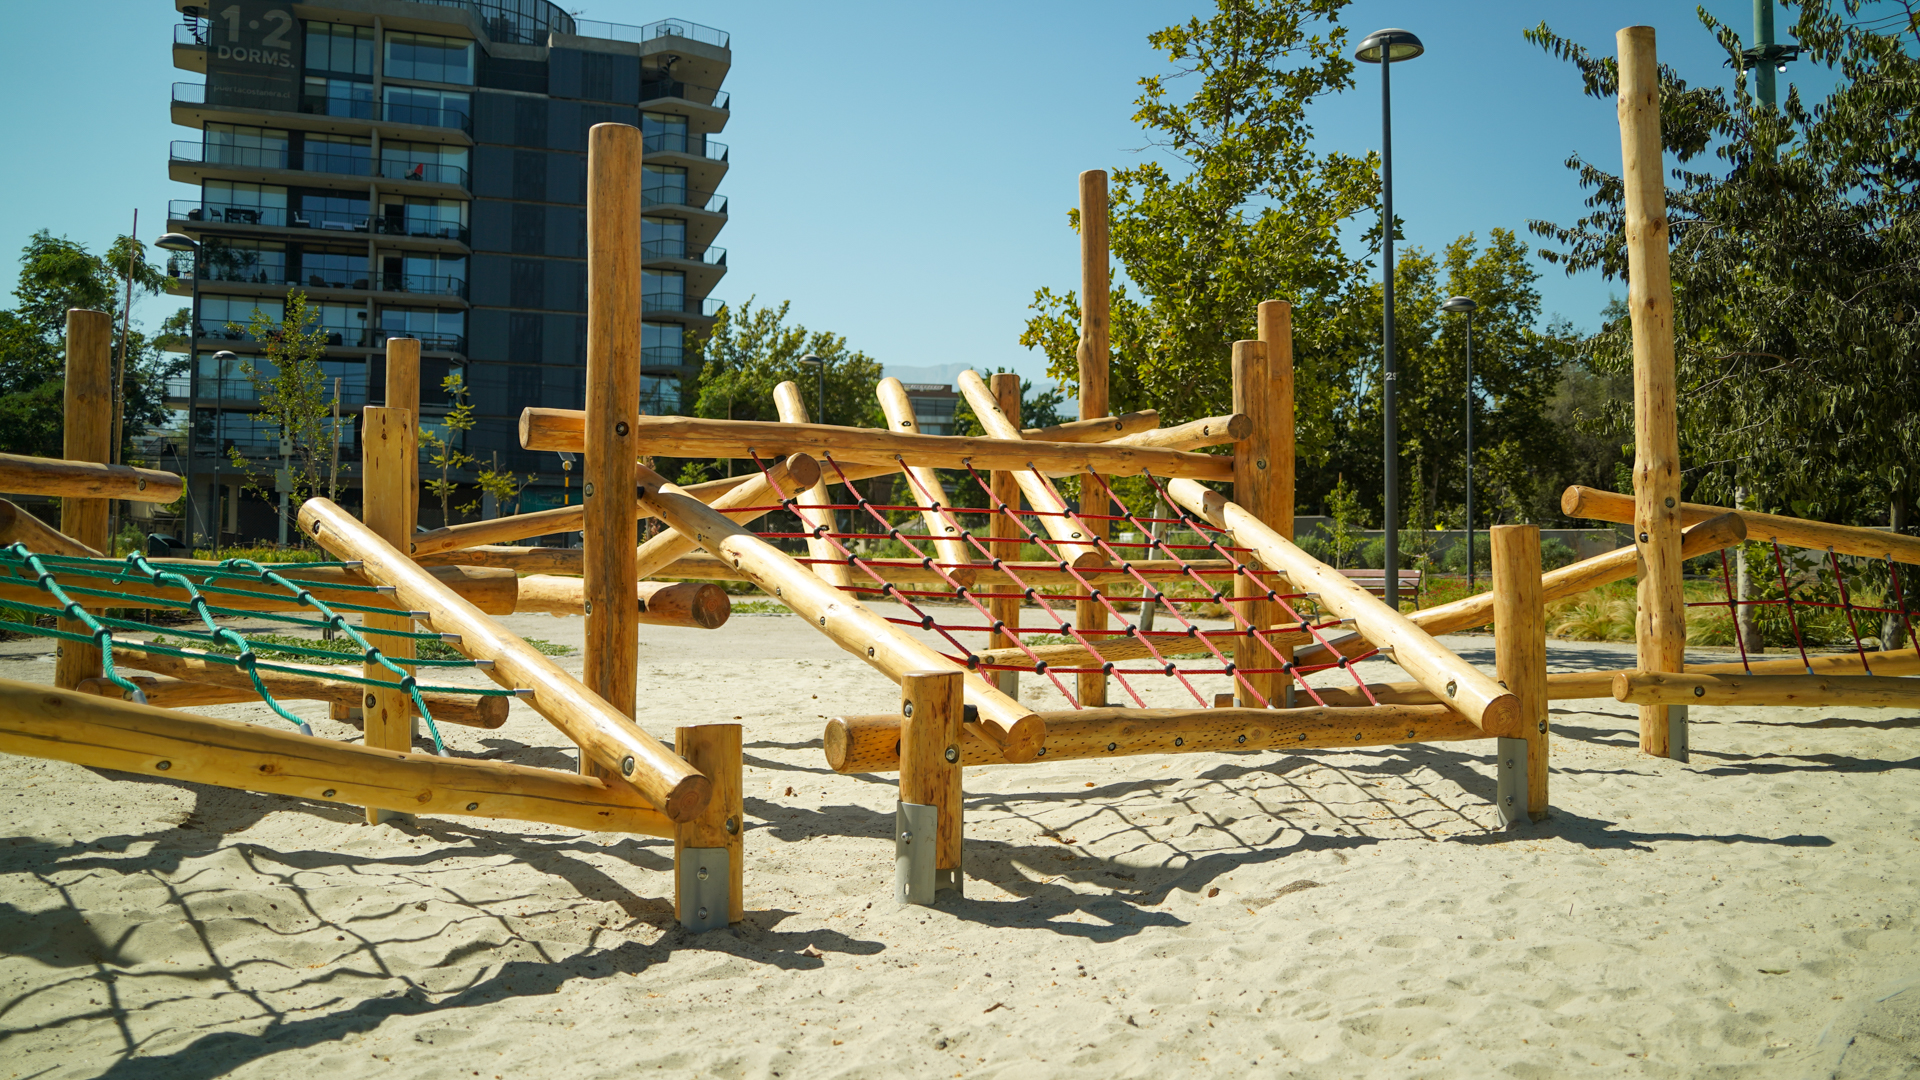 Montar parques infantiles de madera: trucos y recomendaciones